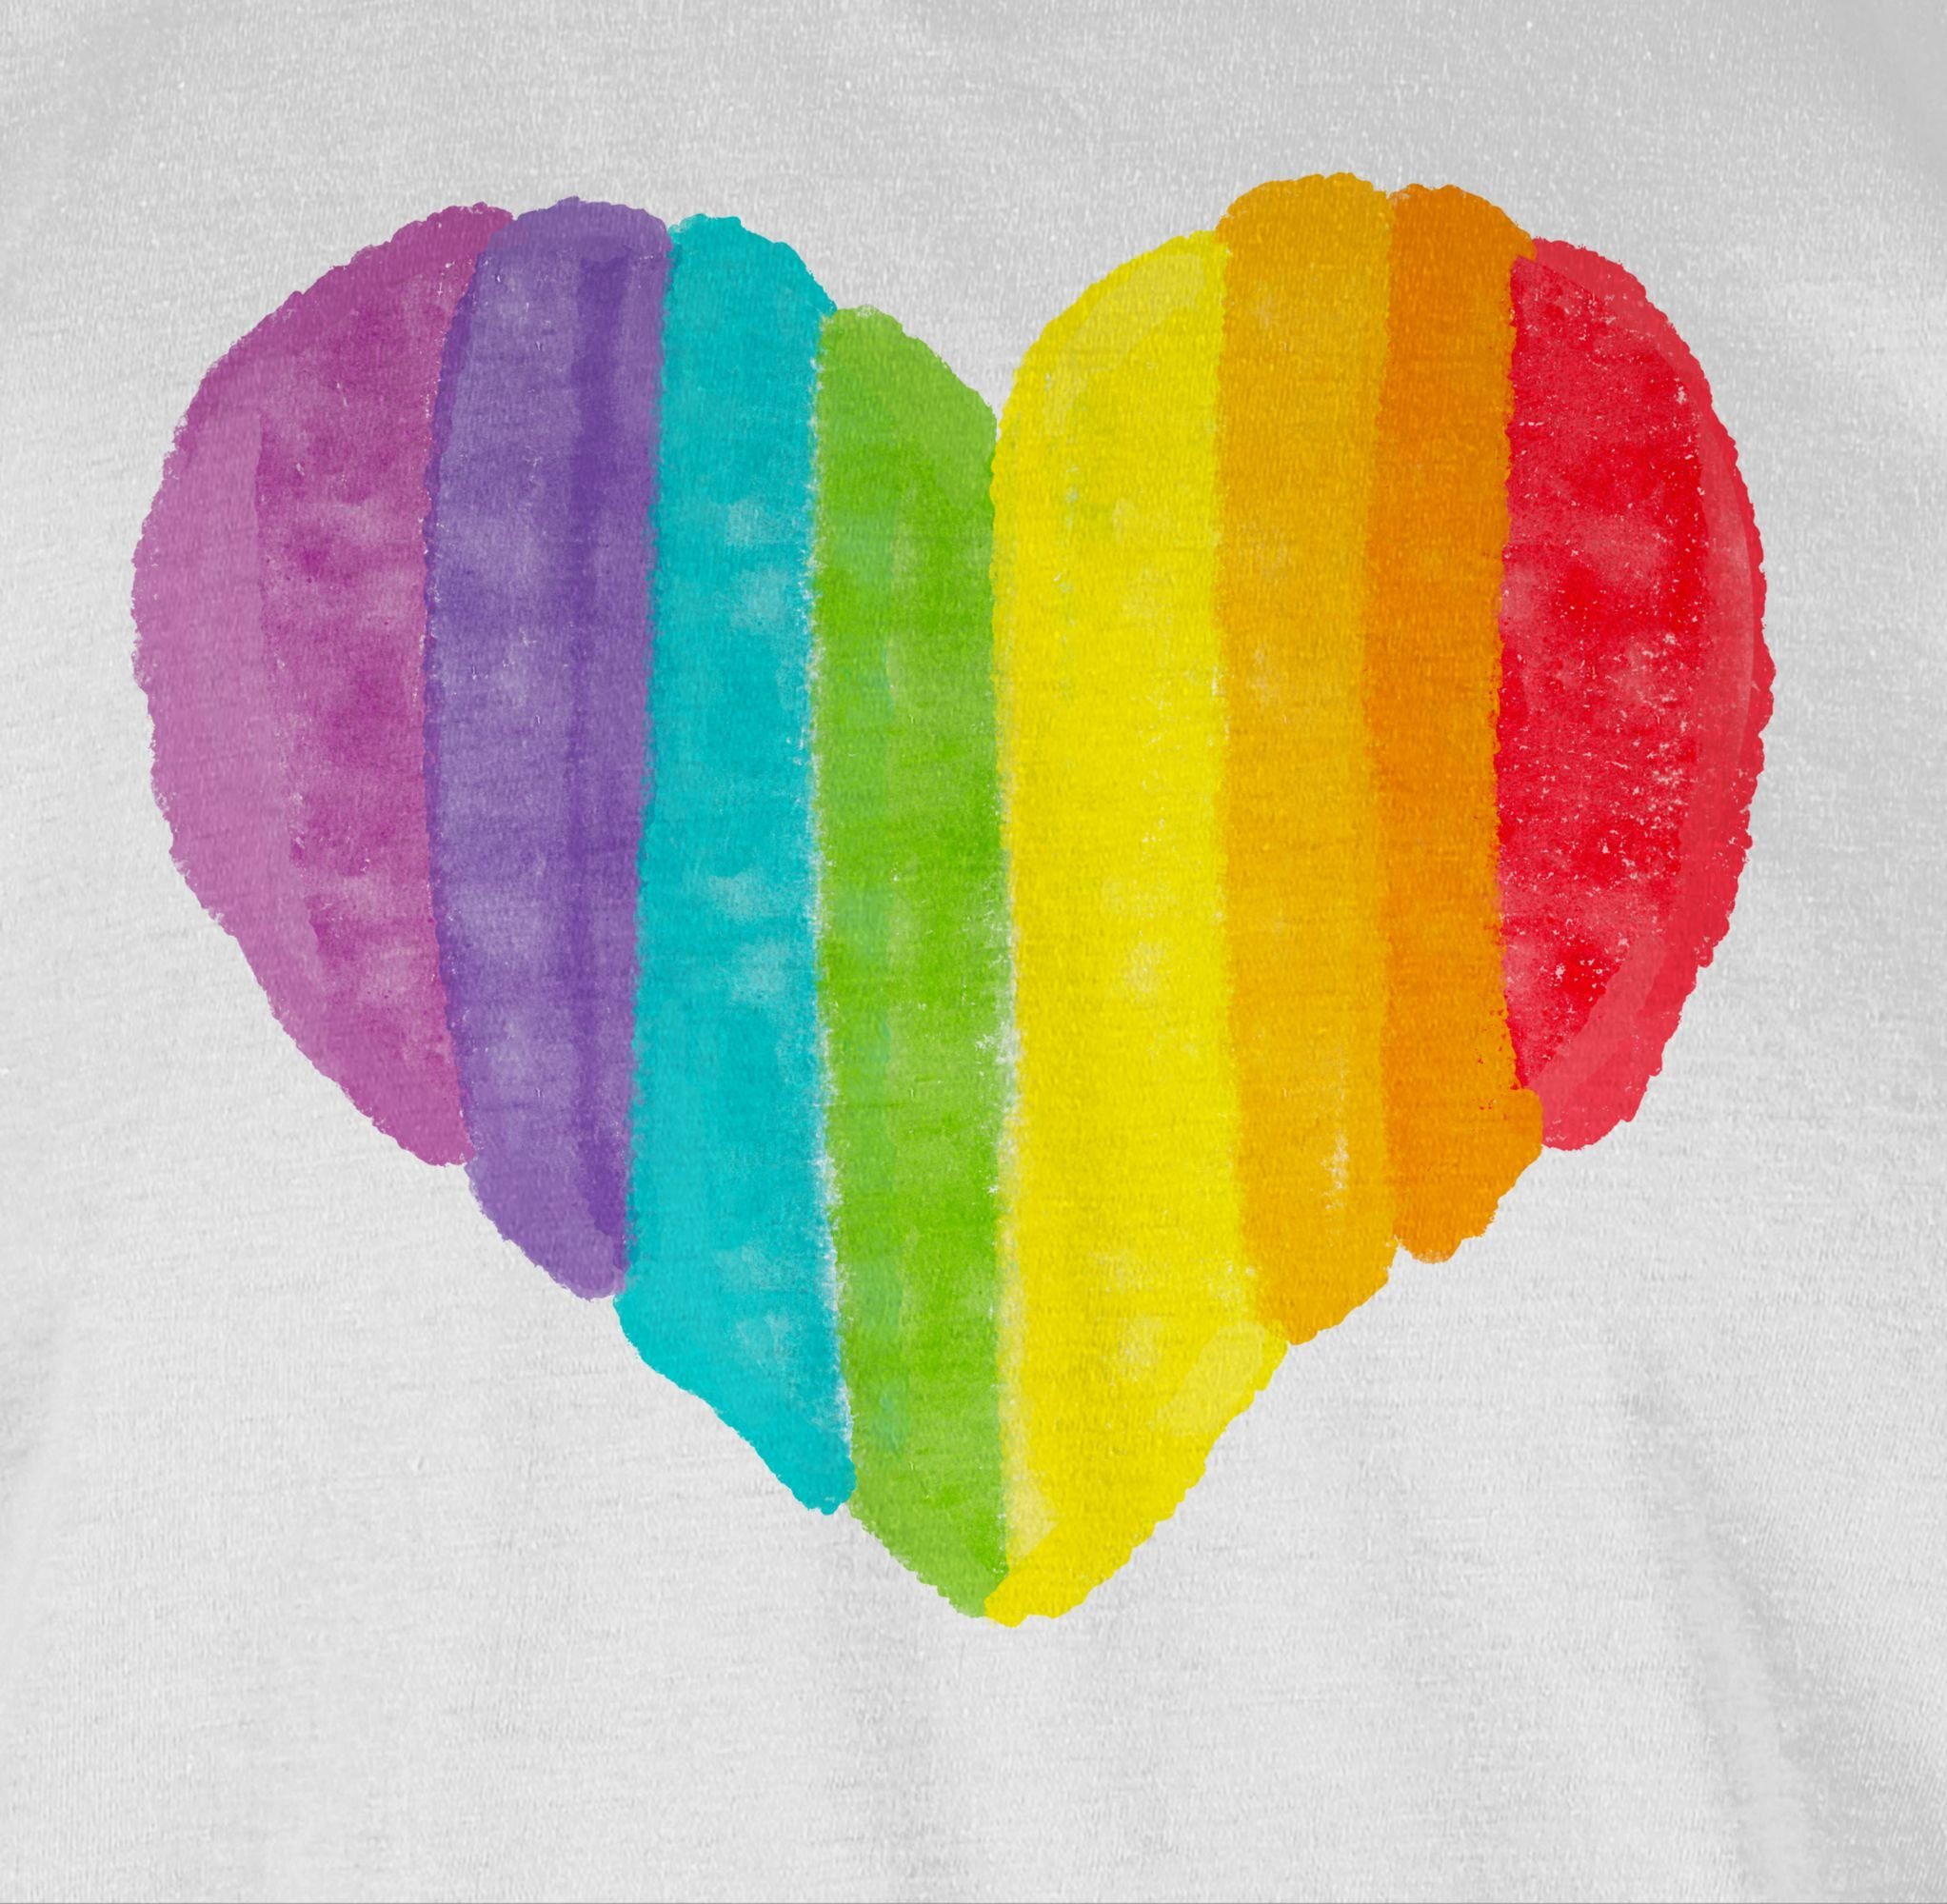 Kleidung LGBT Weiß T-Shirt Regenbogen Herz Shirtracer 02